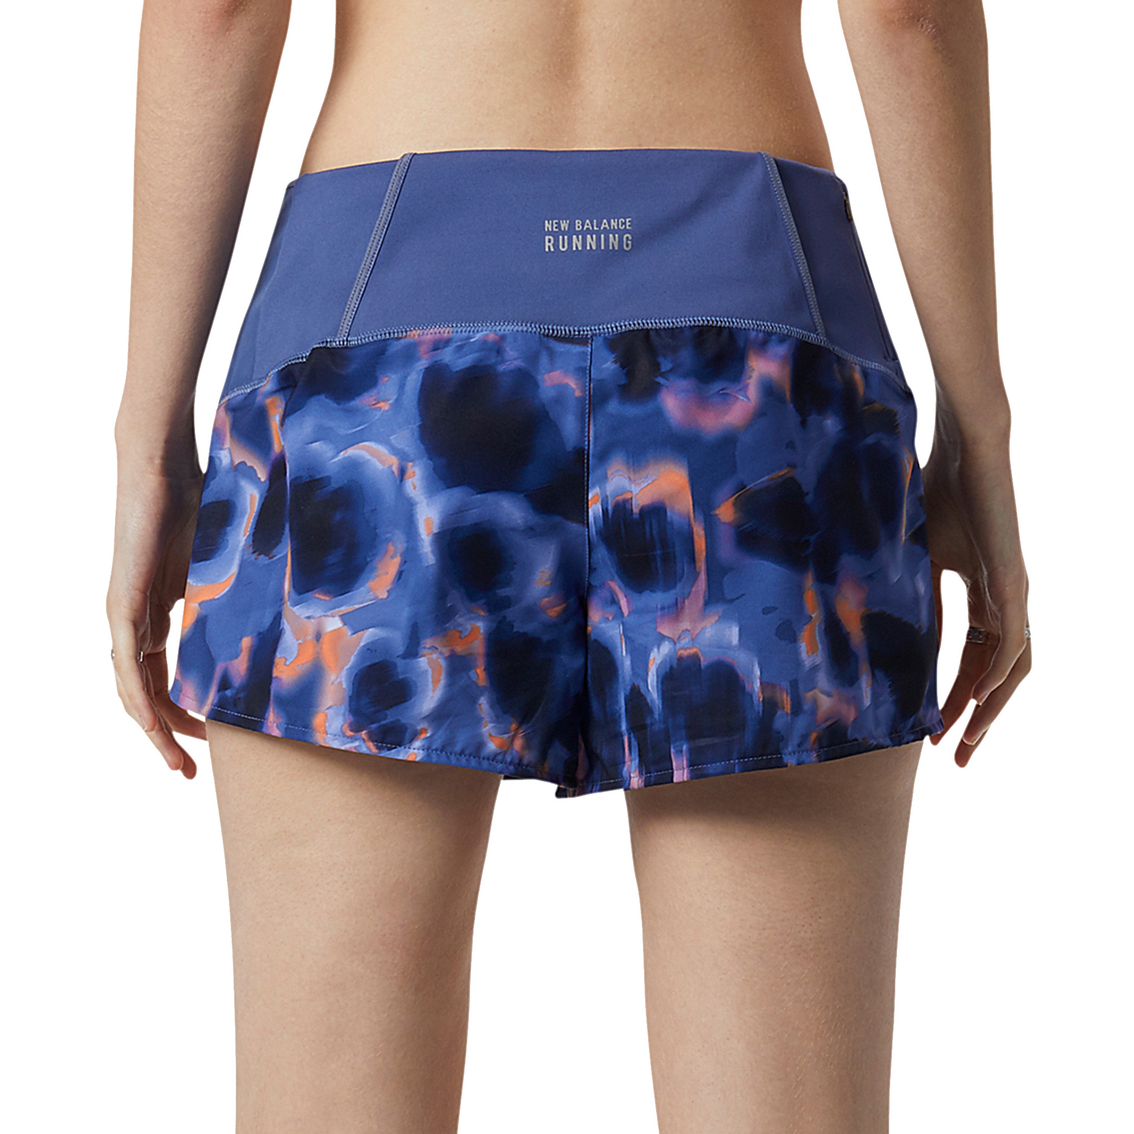 New Balance Printed Impact 3 In. Shorts | Shorts | Clothing ...